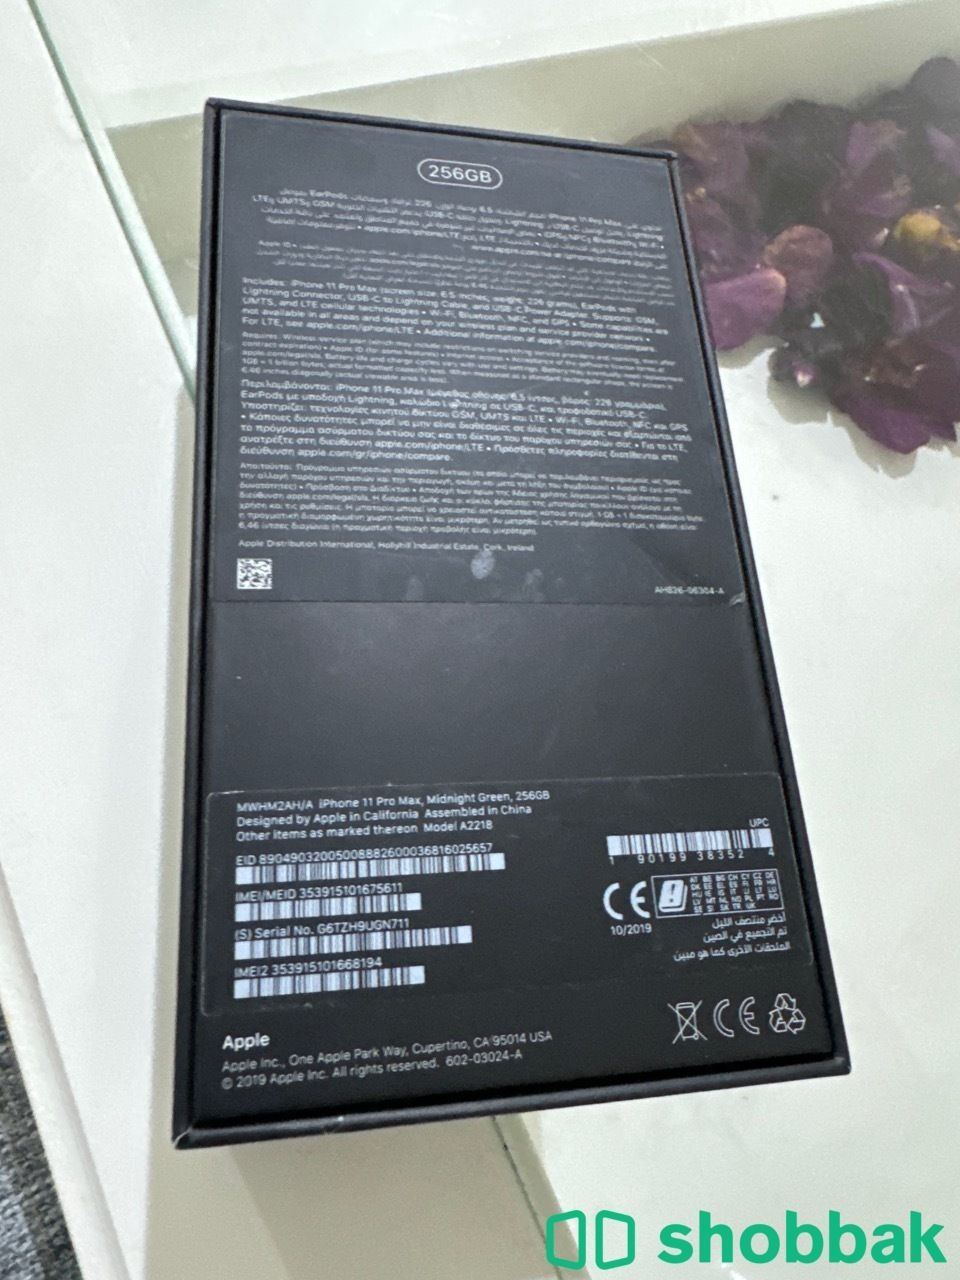 للبيع: iPhone 11 Pro بحجم 256 جيجابايت - مستعمل بحالة ممتازة Shobbak Saudi Arabia